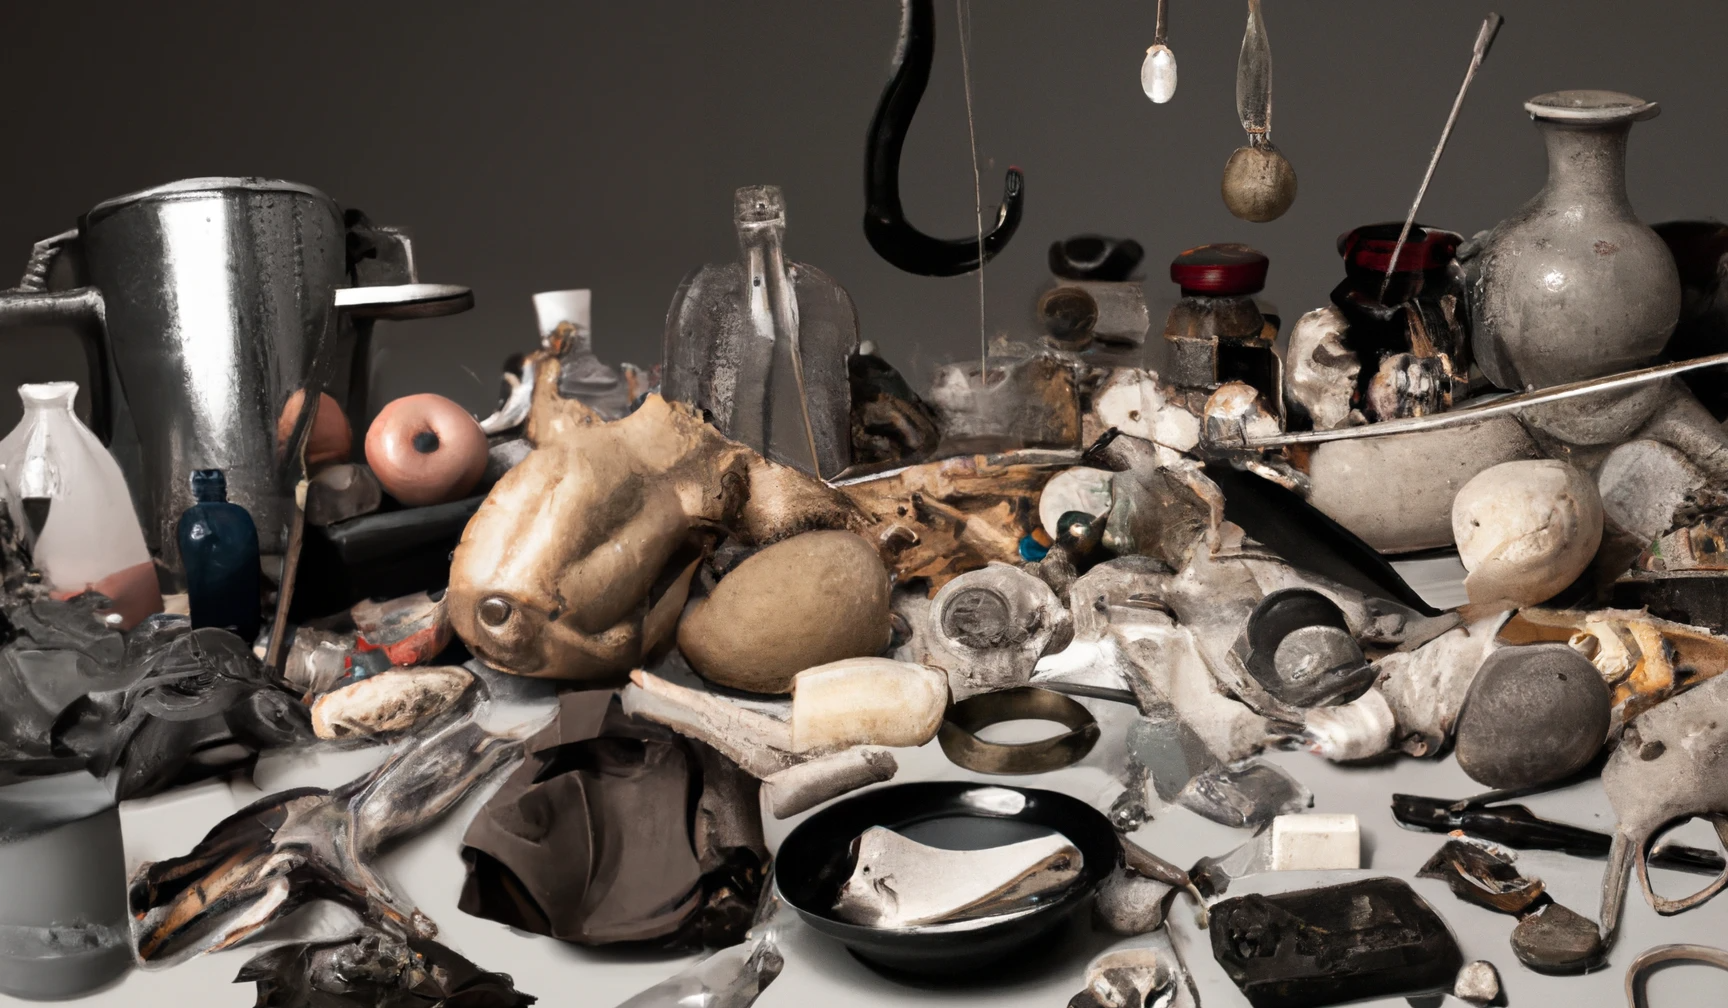 DALL·E 2022-12-18 19.00.52 - photographie studio d'une table remplie d'objets mystérieux et insolites recouvert de graisse dans les tons beige et gris.png